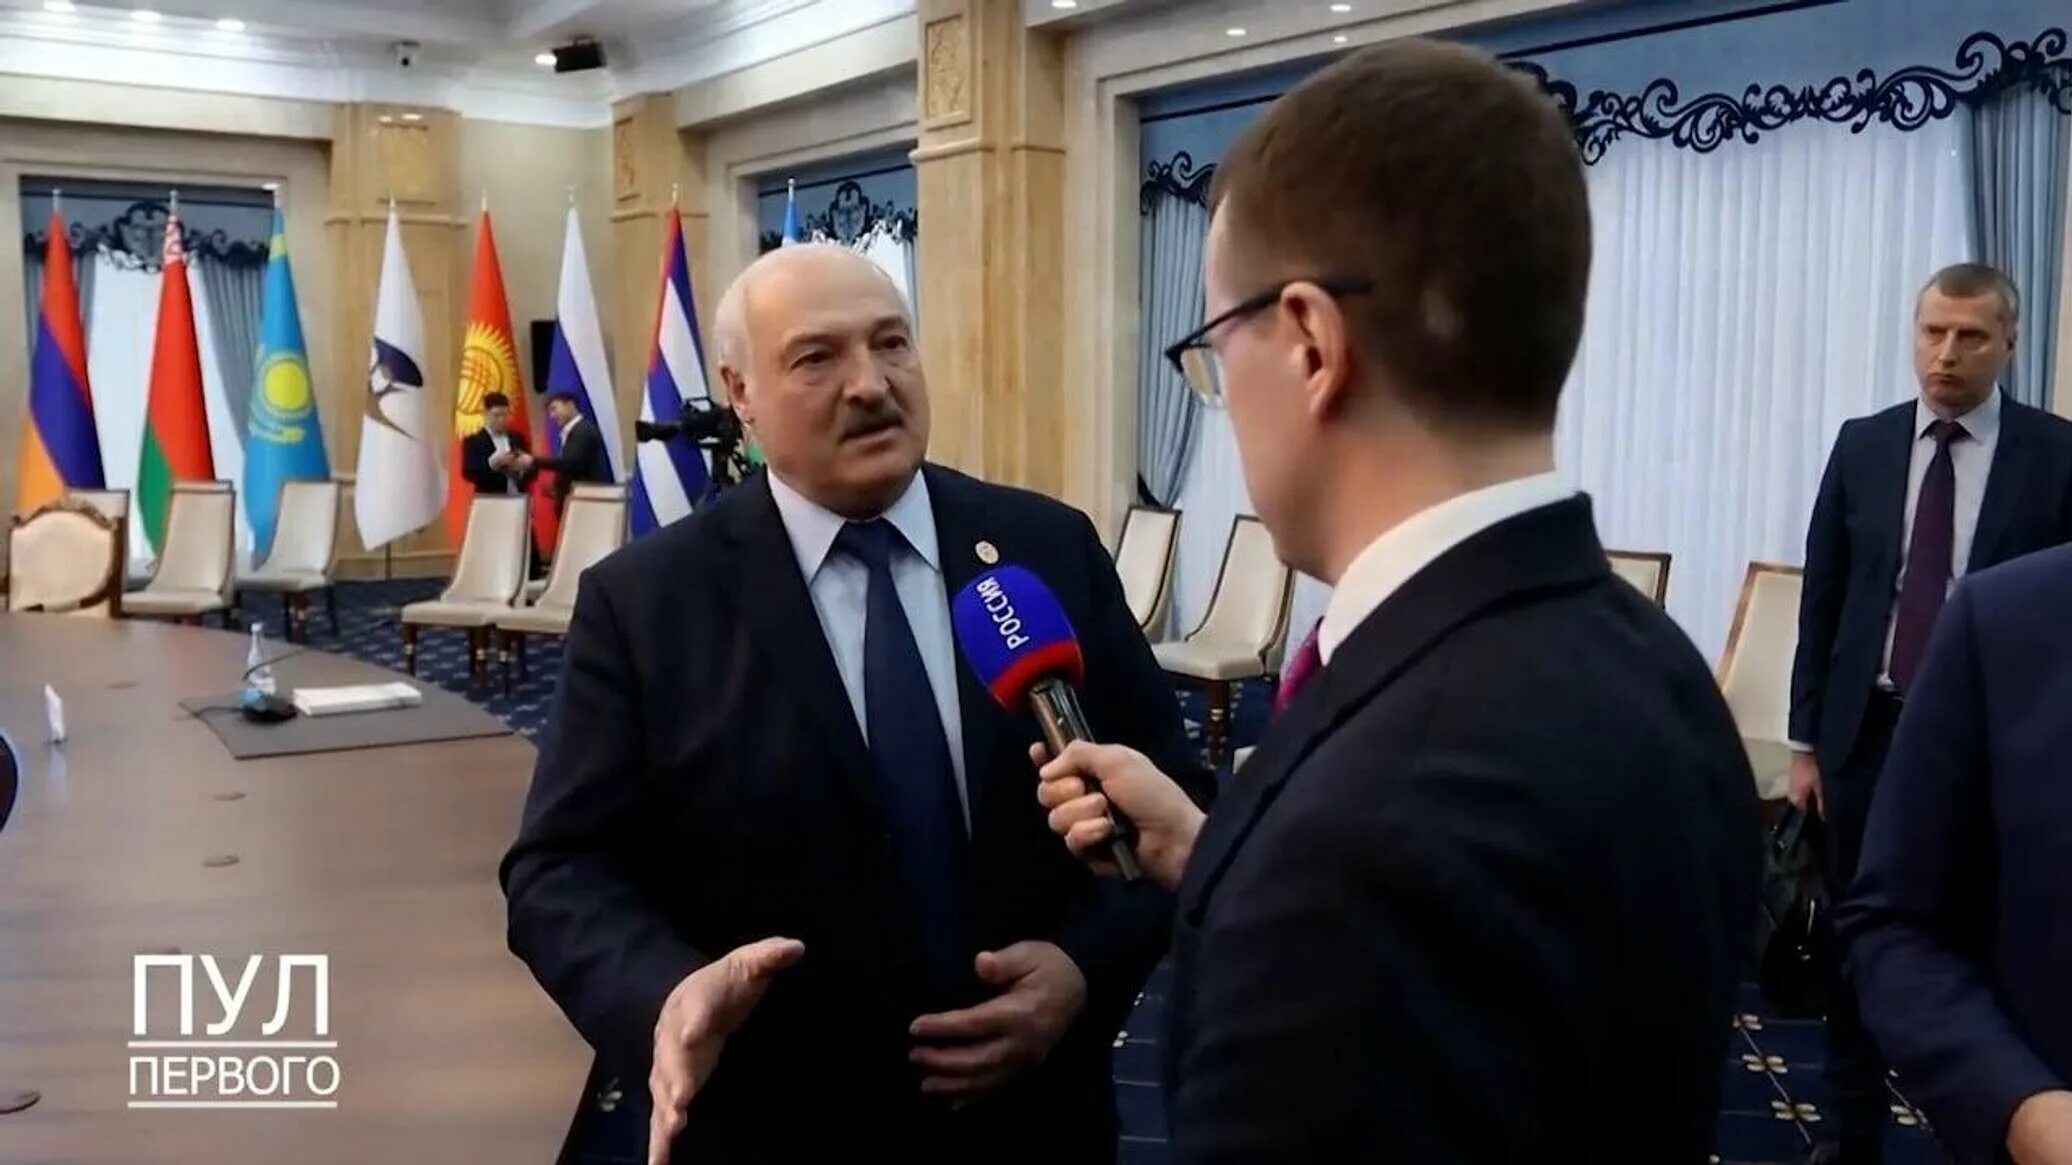 Лукашенко с украинскими президентами. Журналист Лукашенко корреспондент. Украина 2021 год. Минские соглашения.